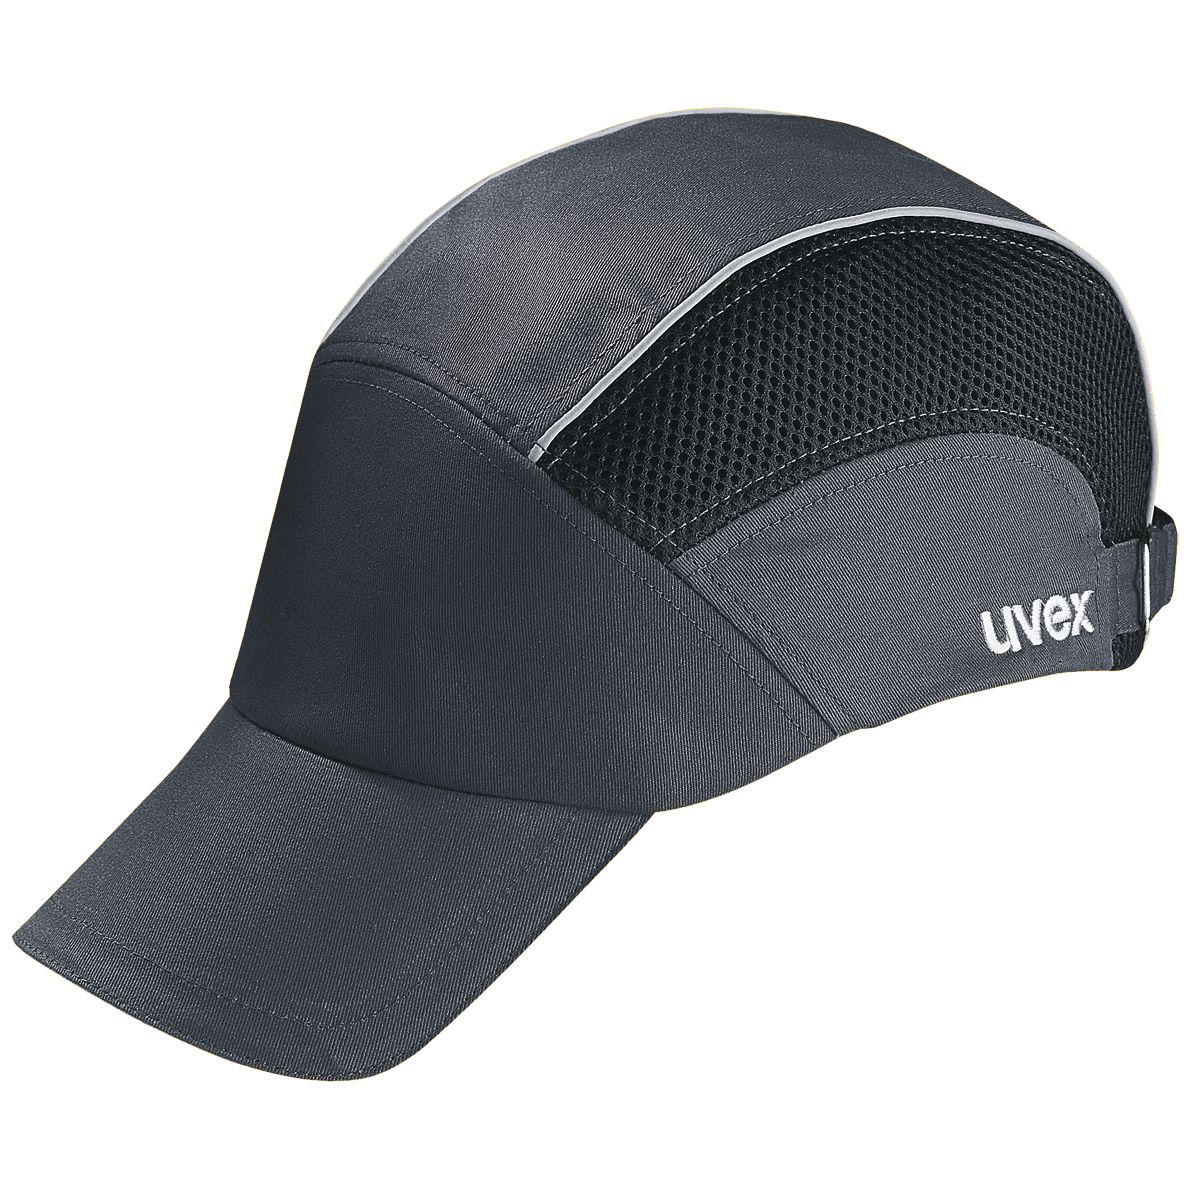 uvex u-cap premium u-style Anstoßkappe - Komfortable Schutzkappe mit langem Schirm - für Bau & Industrie - EN 812